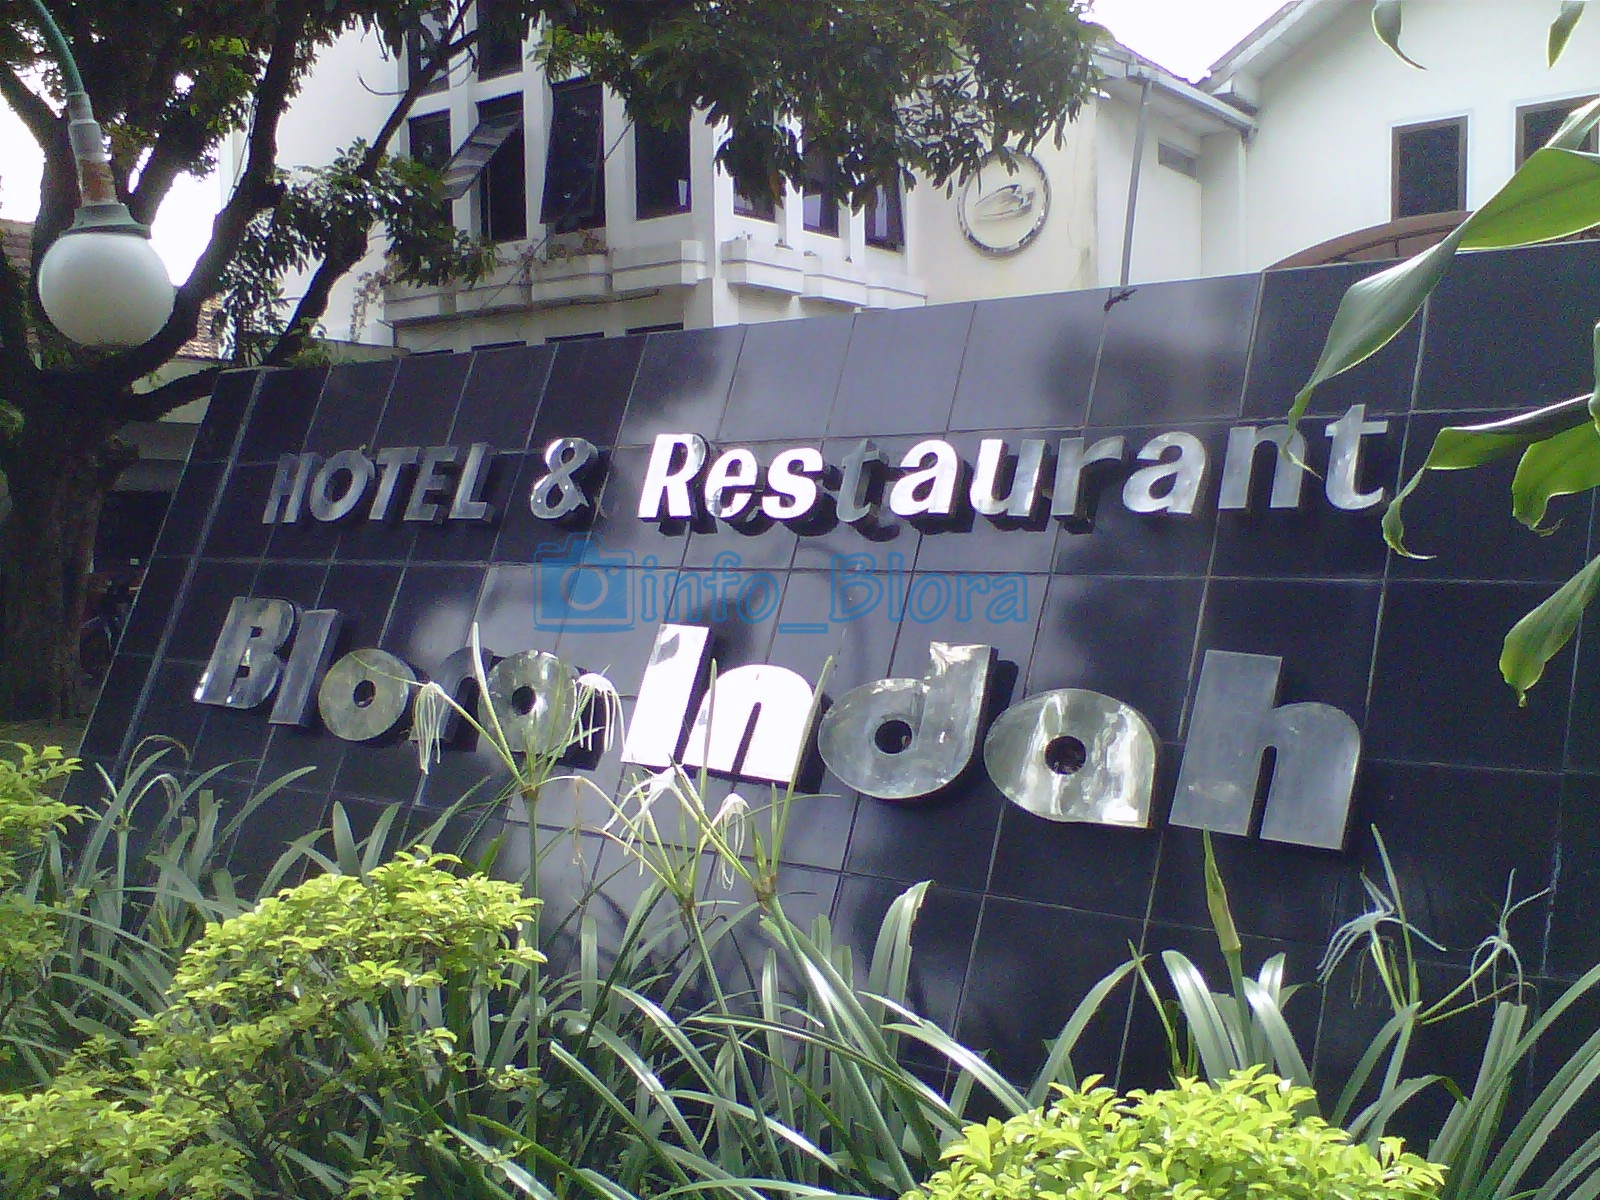 Hotel Blora Indah - infoblora.com